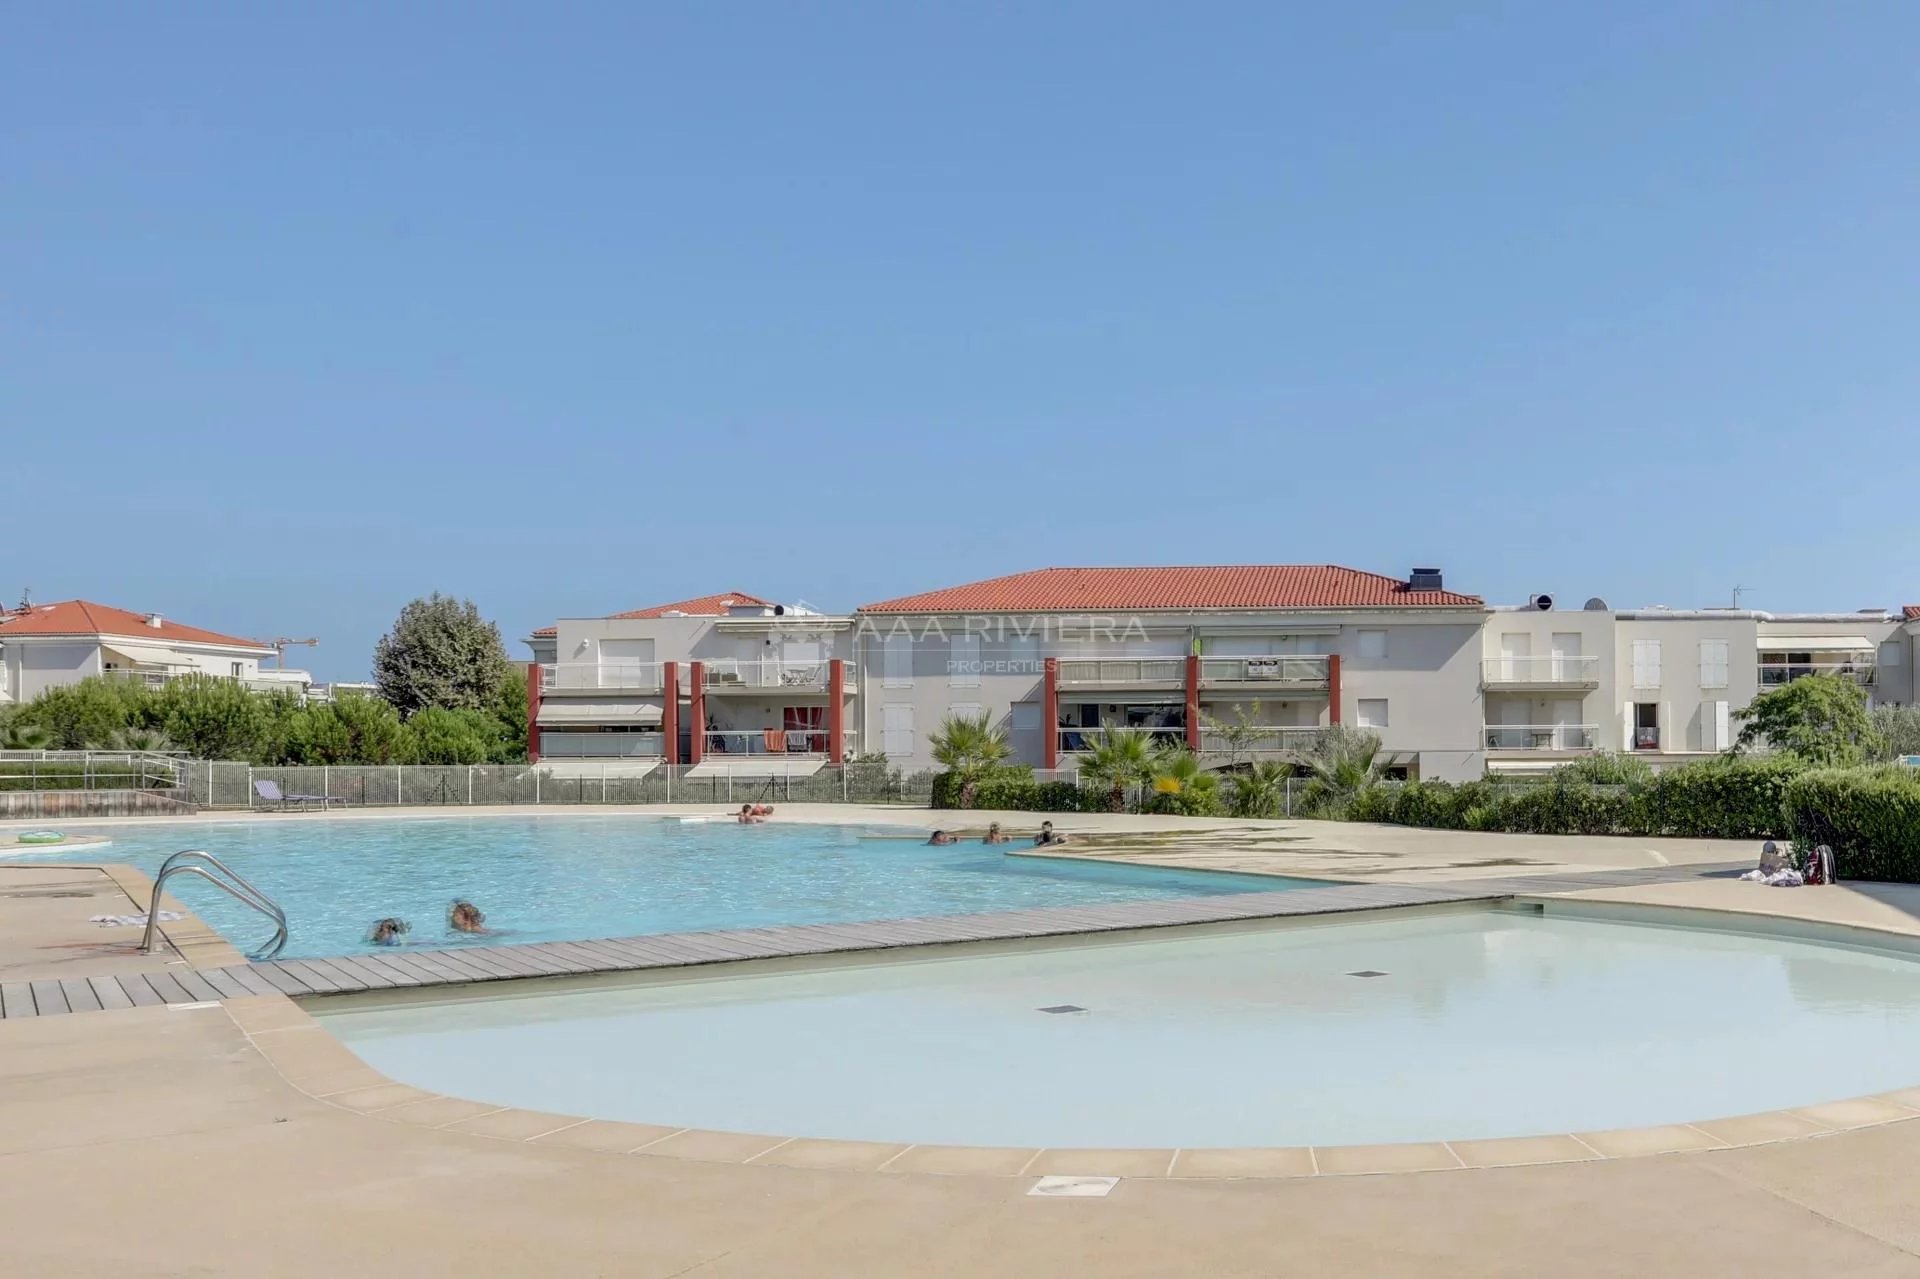 EXCLUSIVITE - Juan les Pins -  Bel appartement 3P dans résidence avec piscine . Accès direct plages